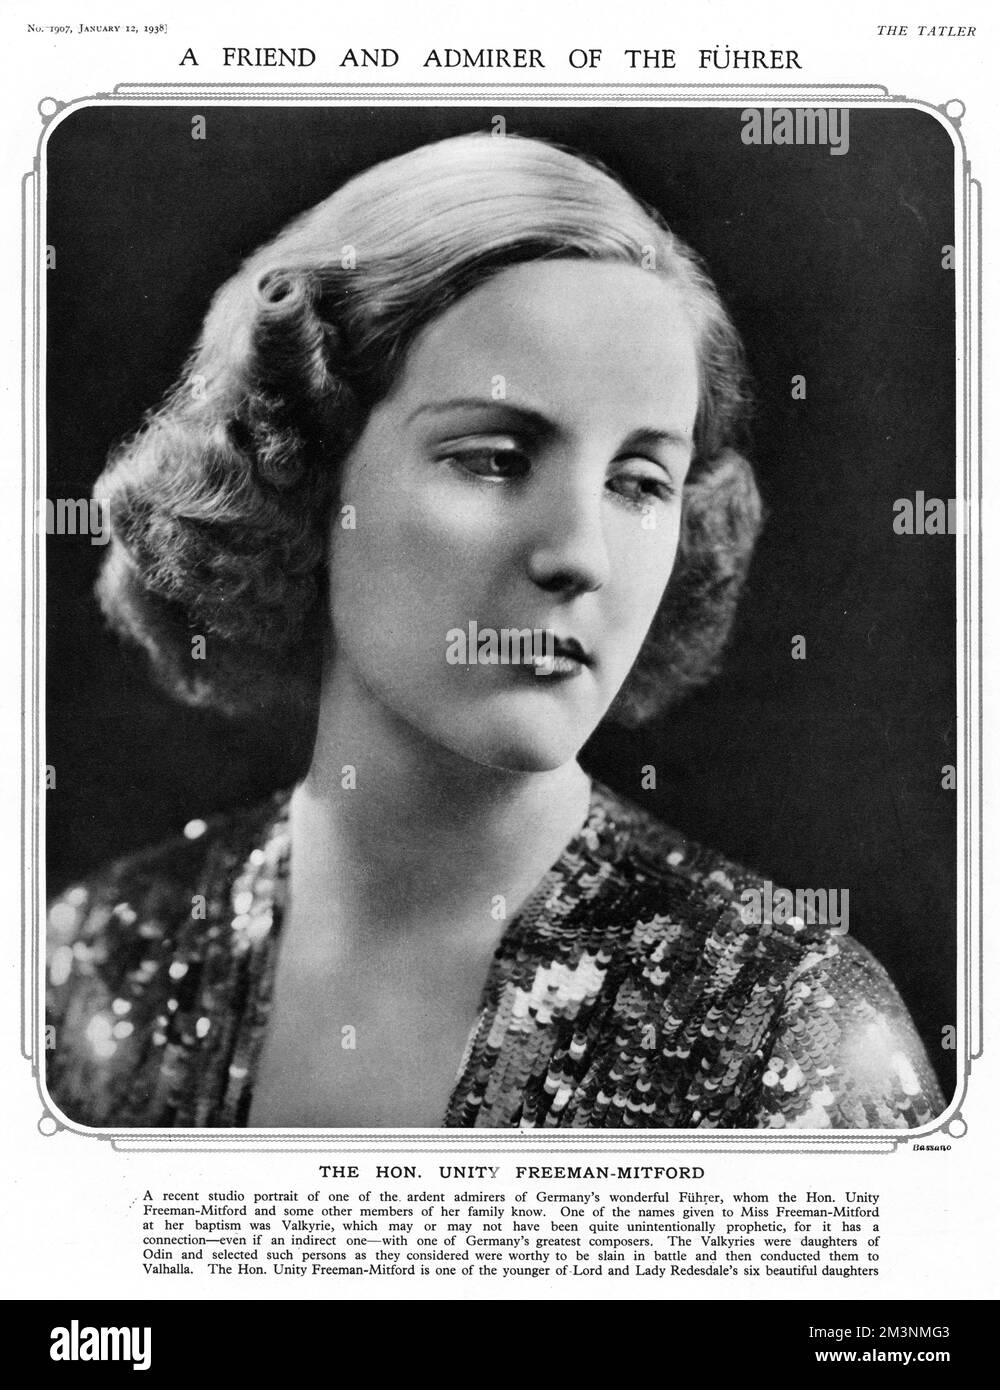 Unité Valkyrie Freeman-Mitford (1914 - 1948), quatrième fille de Lord et de Lady Redesdale. L'unité a connu le soutien du parti nazi et, dans la période qui a précédé la Seconde Guerre mondiale, a passé beaucoup de temps en Allemagne, souvent en compagnie d'Adolf Hitler avec qui elle a développé une obsession. En 1939, suite à la déclaration de guerre de la Grande-Bretagne contre l'Allemagne, elle a tenté de se suicider en se tirant elle-même, mais elle a survécu et a été renvoyée au Royaume-Uni pour se rétablir. Unity meurt en 1948, âgé de 33 ans, après avoir souffert de méningite. Cette photographie dans le Tatler est accompagnée d'une légende qui la décrit comme "Un ami Banque D'Images